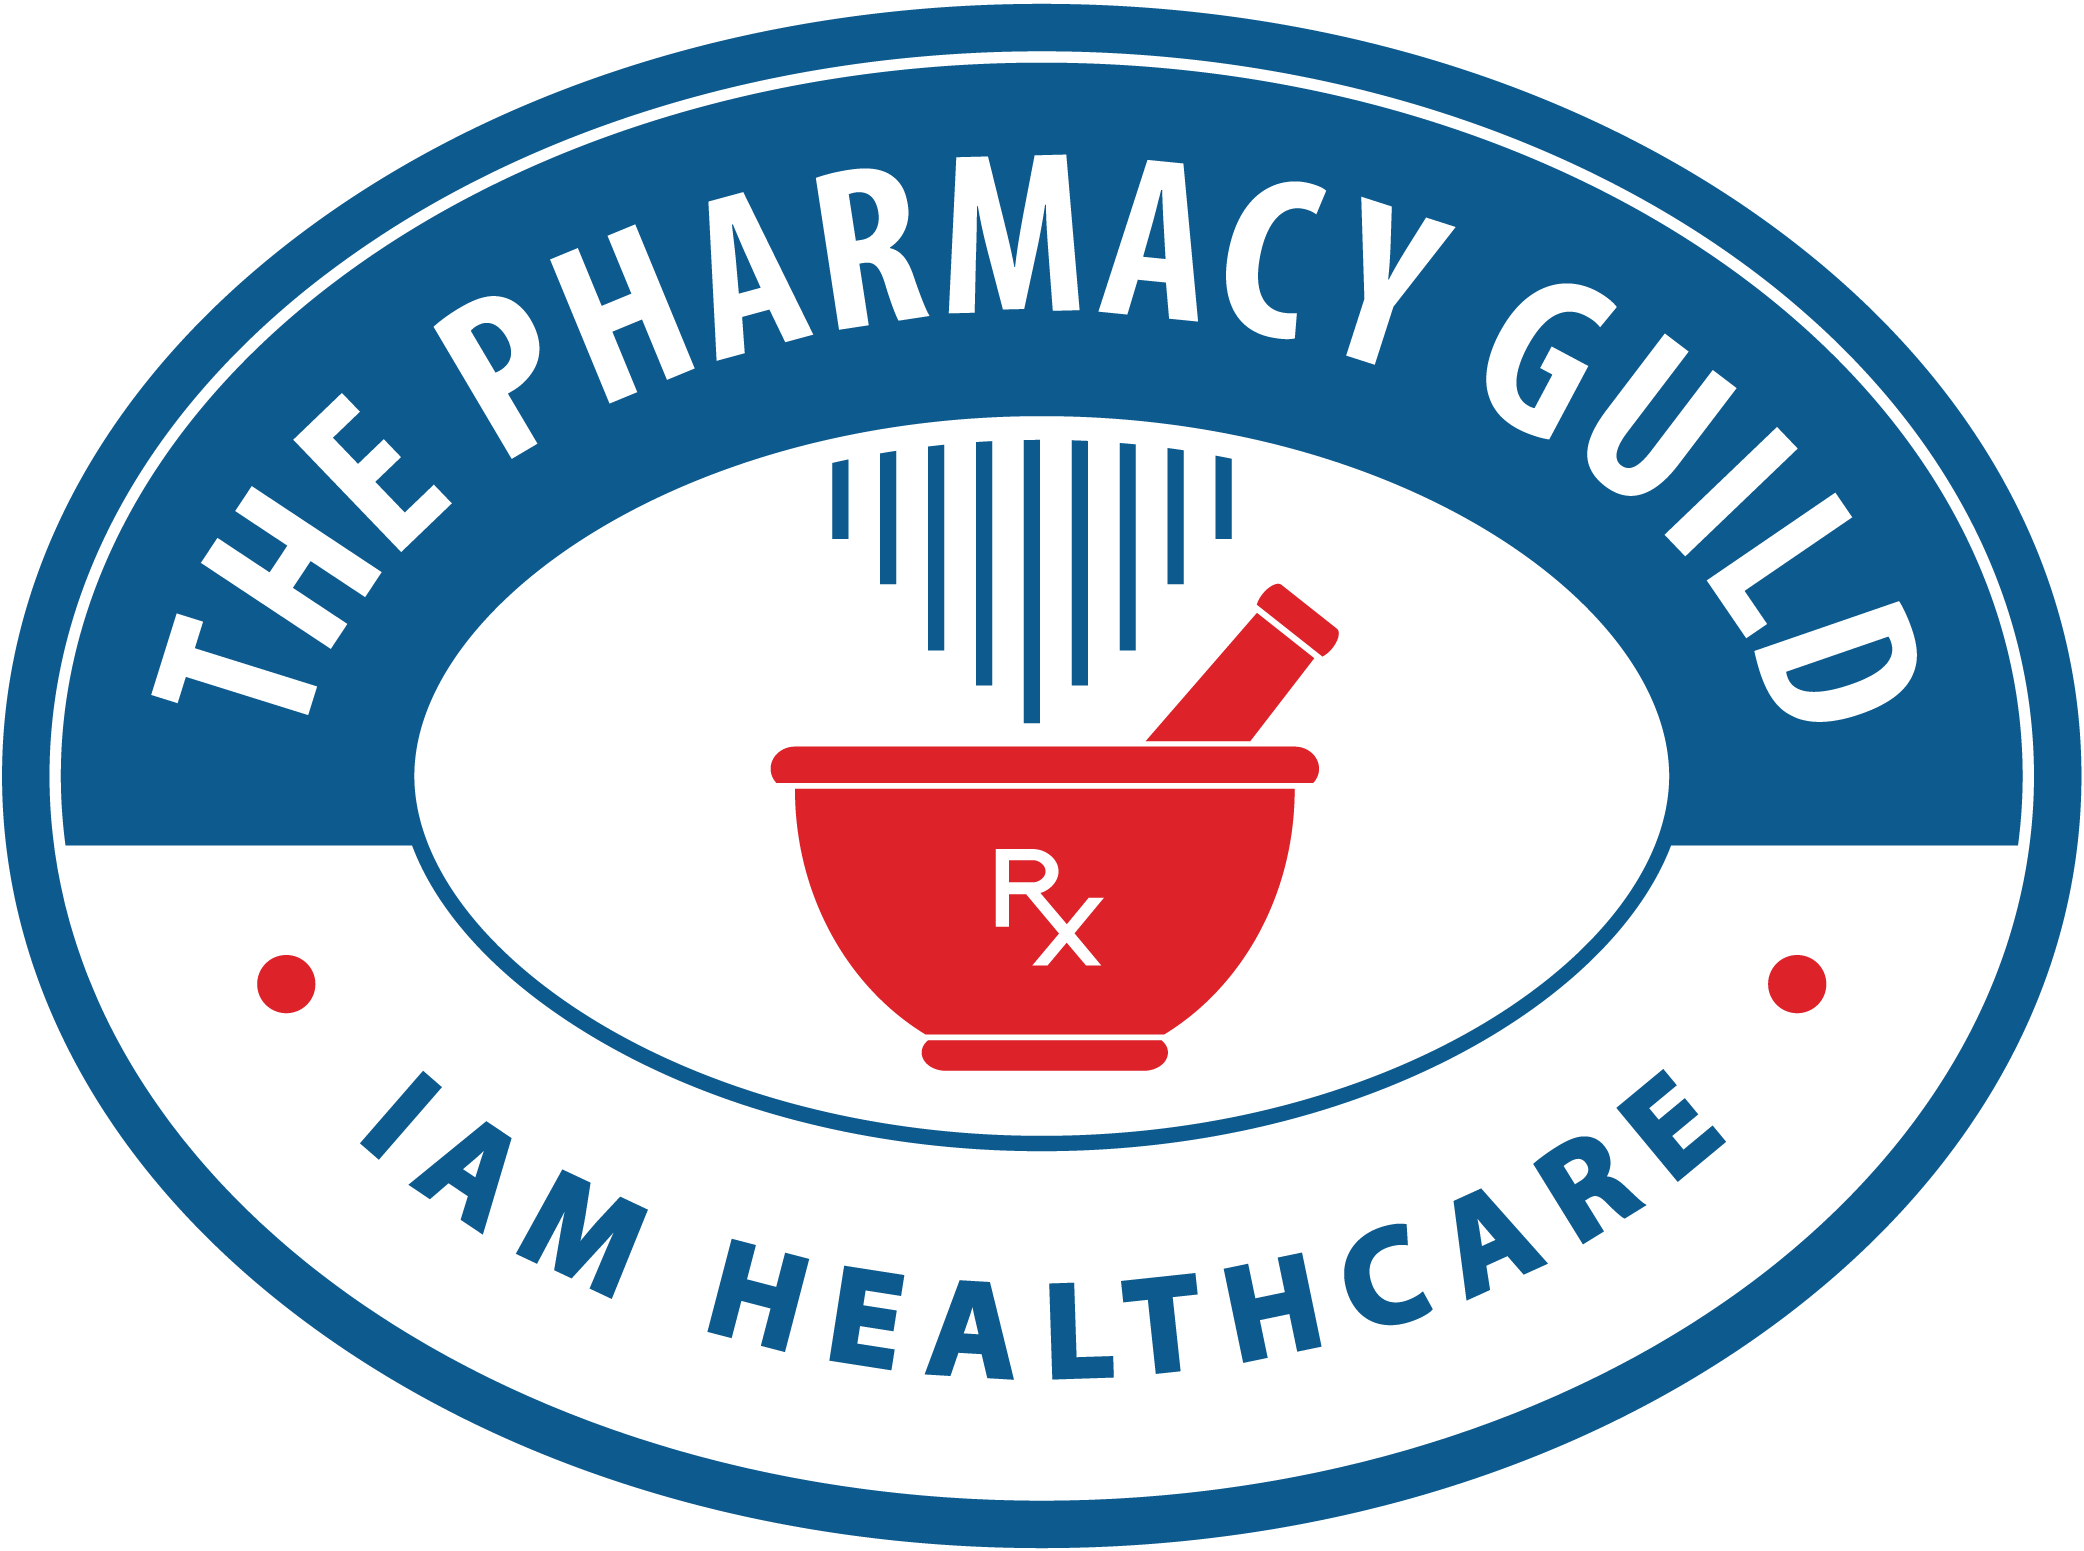 Pharmacy Guild